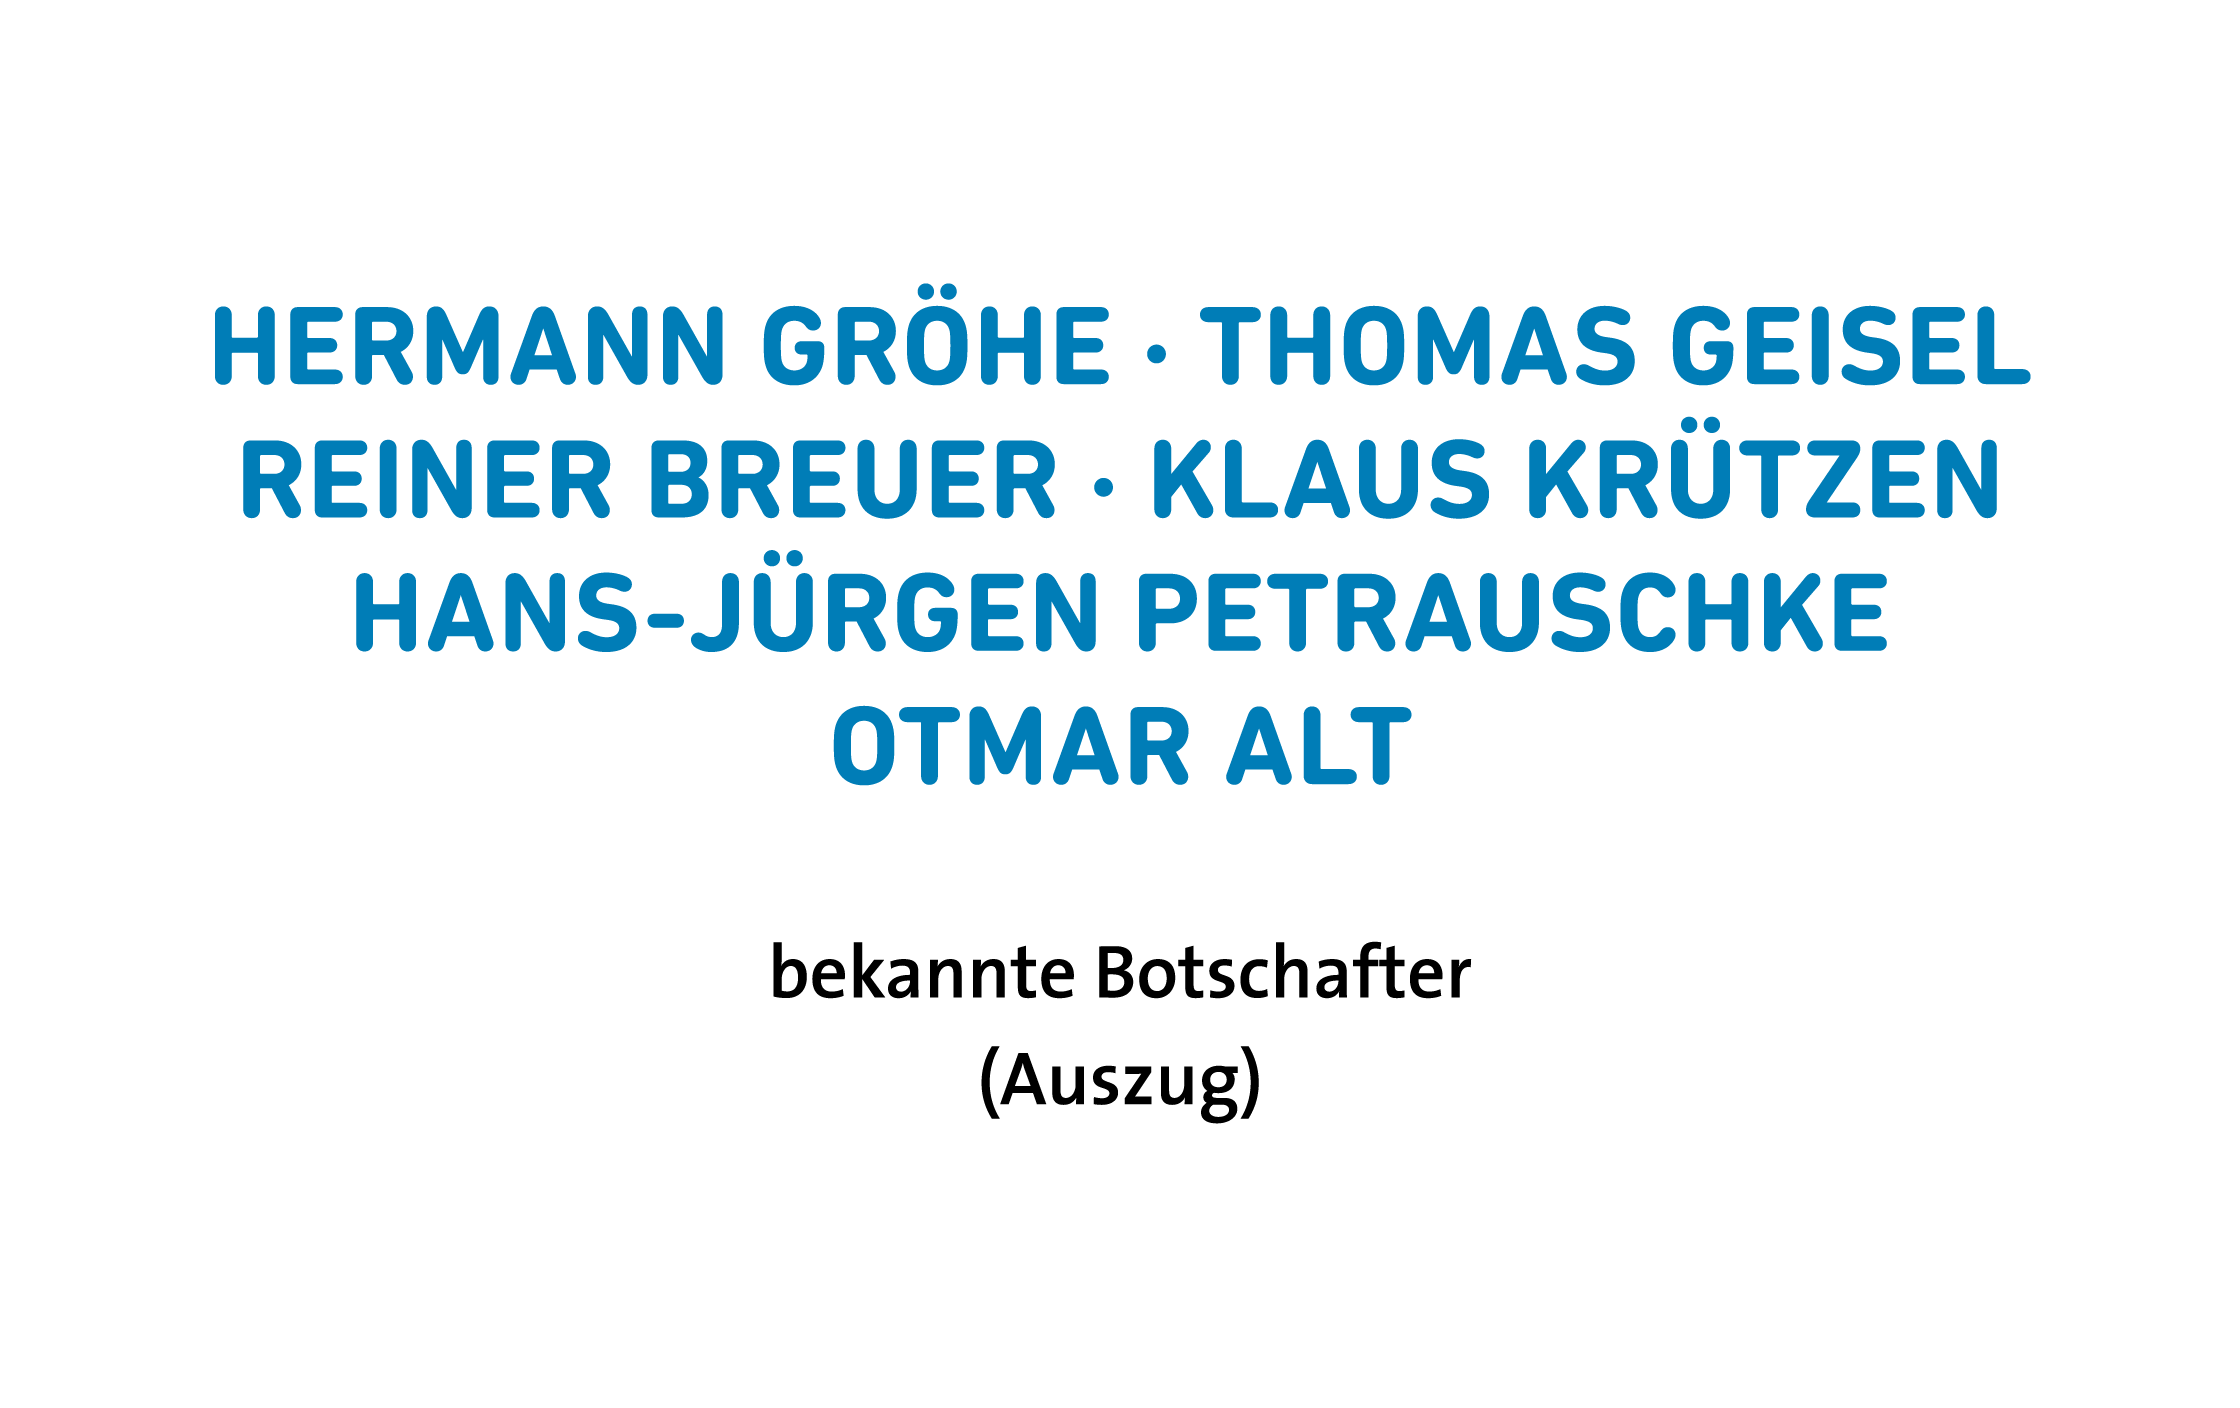 Hermann Gröhe, Thomas Geisel, Reiner Breuer, Klaus Krützen, Hans-Jürgen Petrauschke, Otmar Alt sind bekannte Botschafter der Kinderstiftung